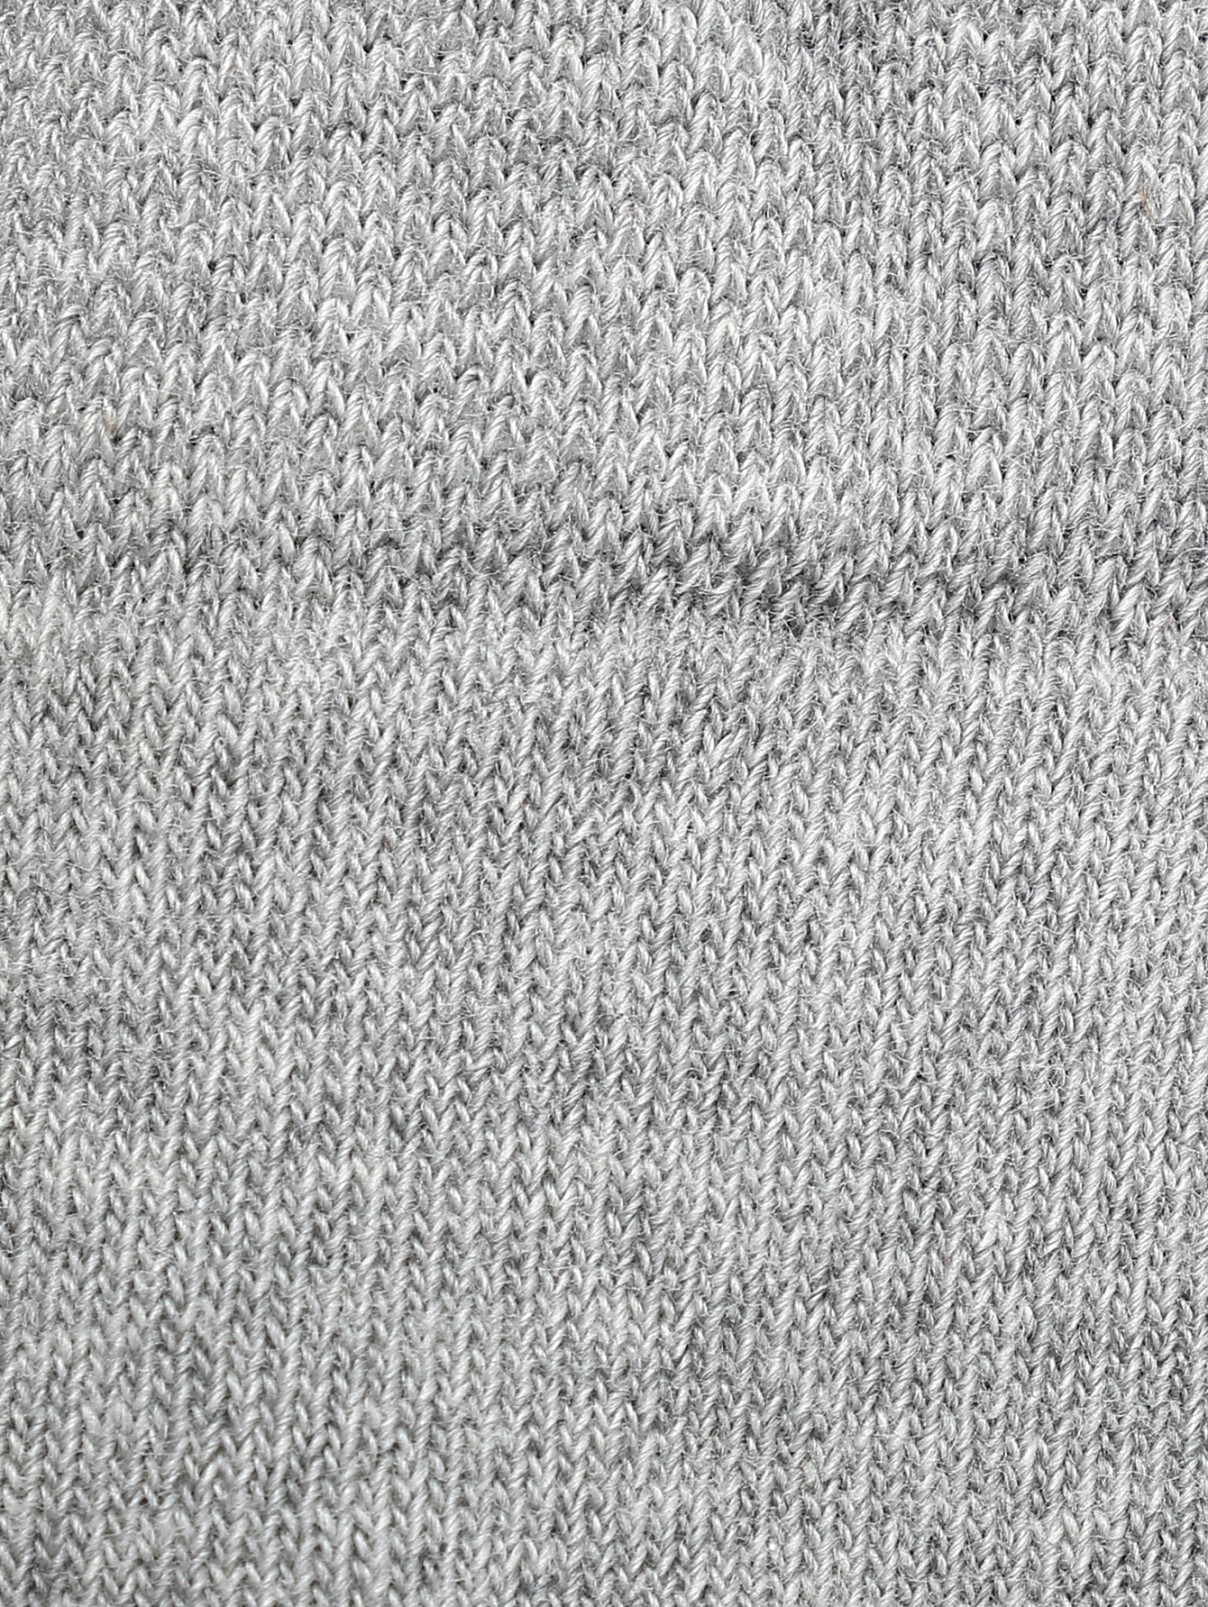 Колготки из хлопка с узором "полоска" Falke  –  Деталь  – Цвет:  Серый